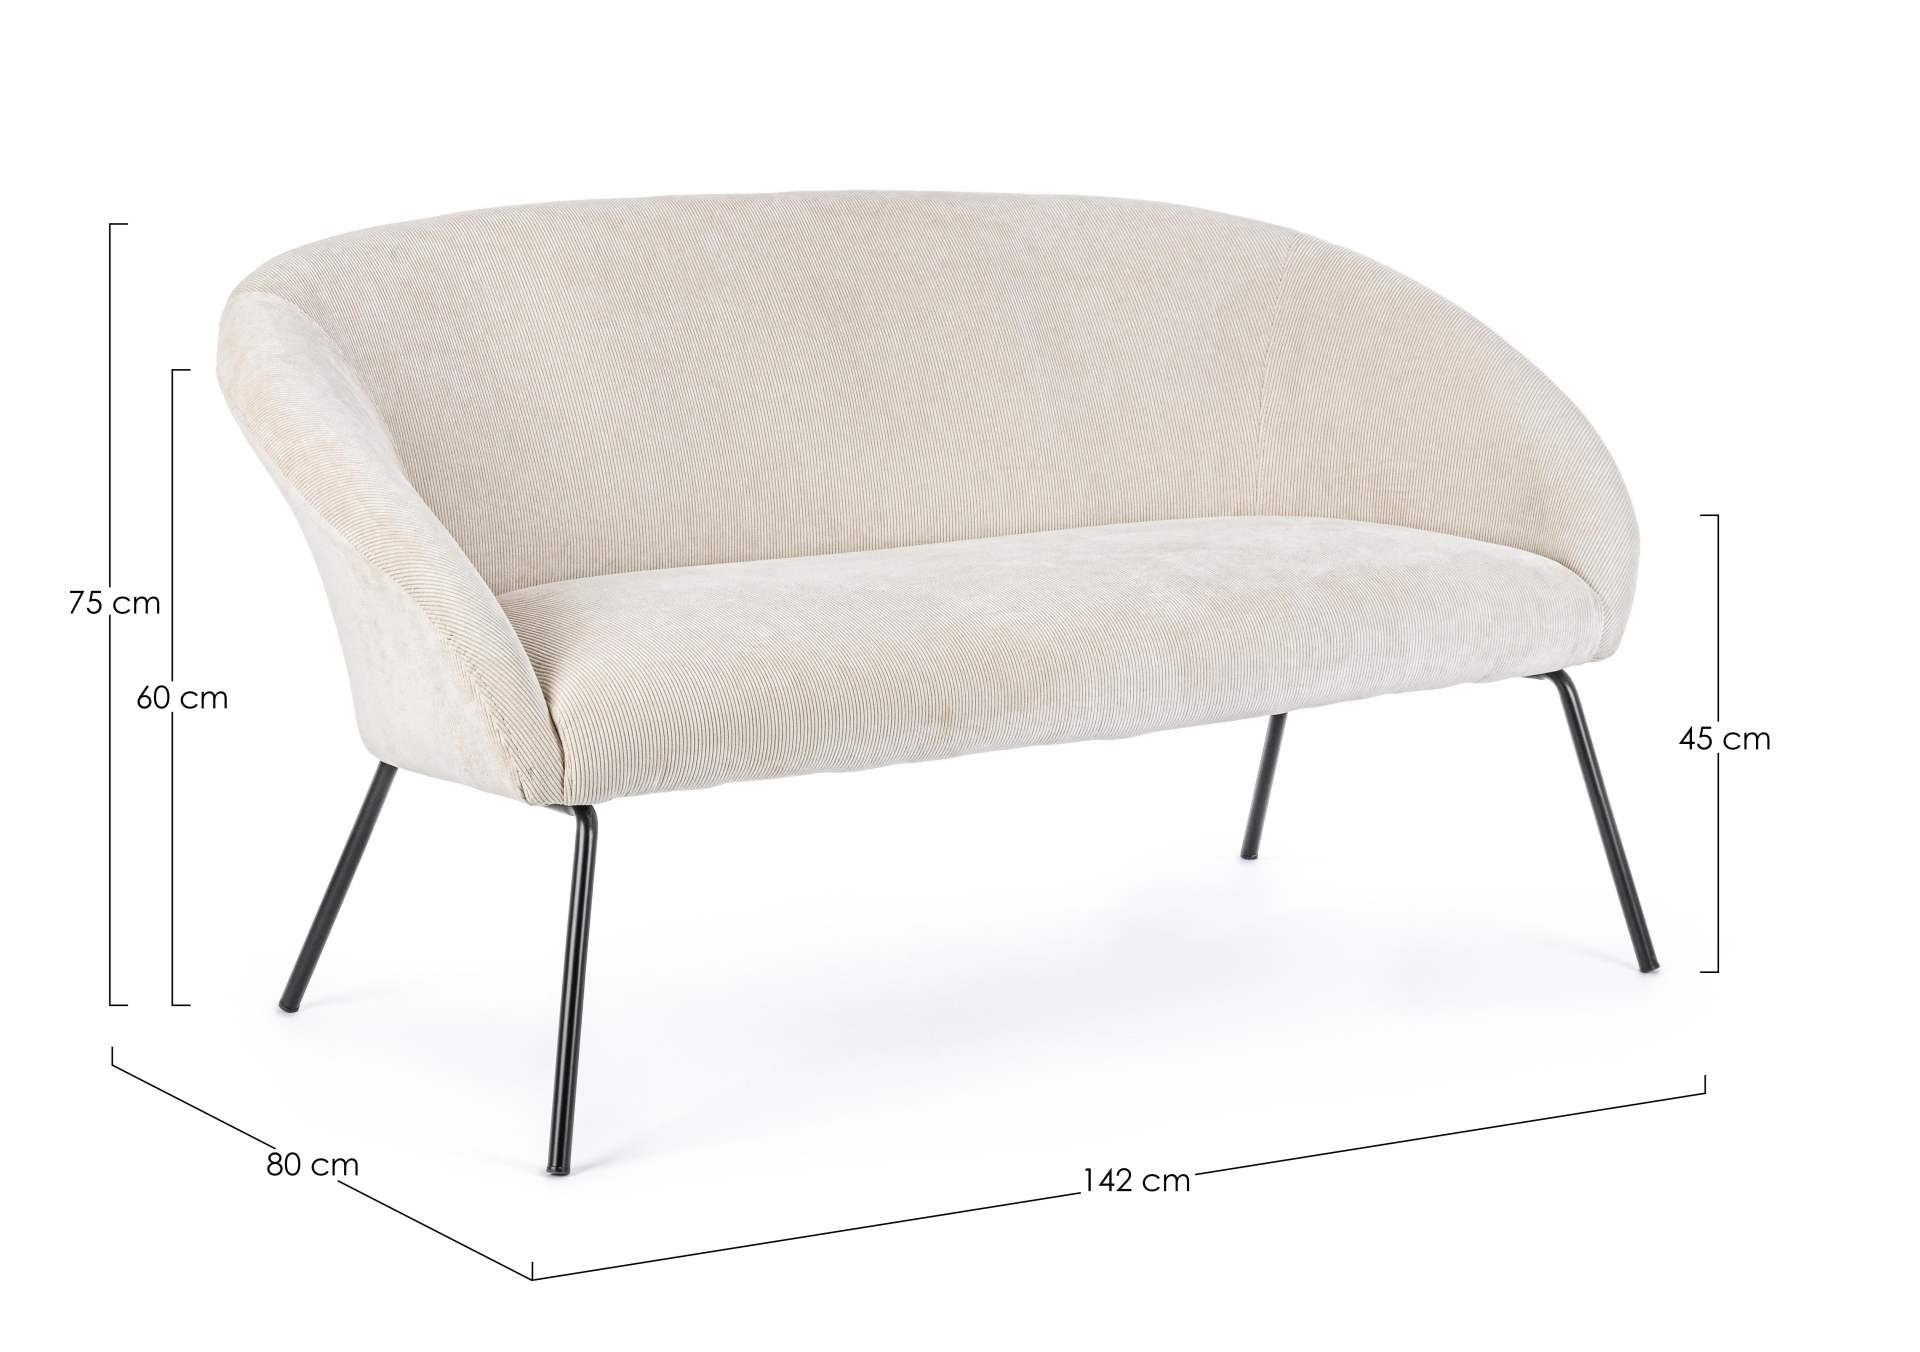 Das Sofa Aiko überzeugt mit seinem modernen Design. Gefertigt wurde es aus Stoff in Samt-Optik, welcher einen weißen Farbton besitzt. Das Gestell ist aus Metall und hat eine schwarze Farbe. Das Sofa ist in der Ausführung als 2-Sitzer. Die Breite beträgt 1